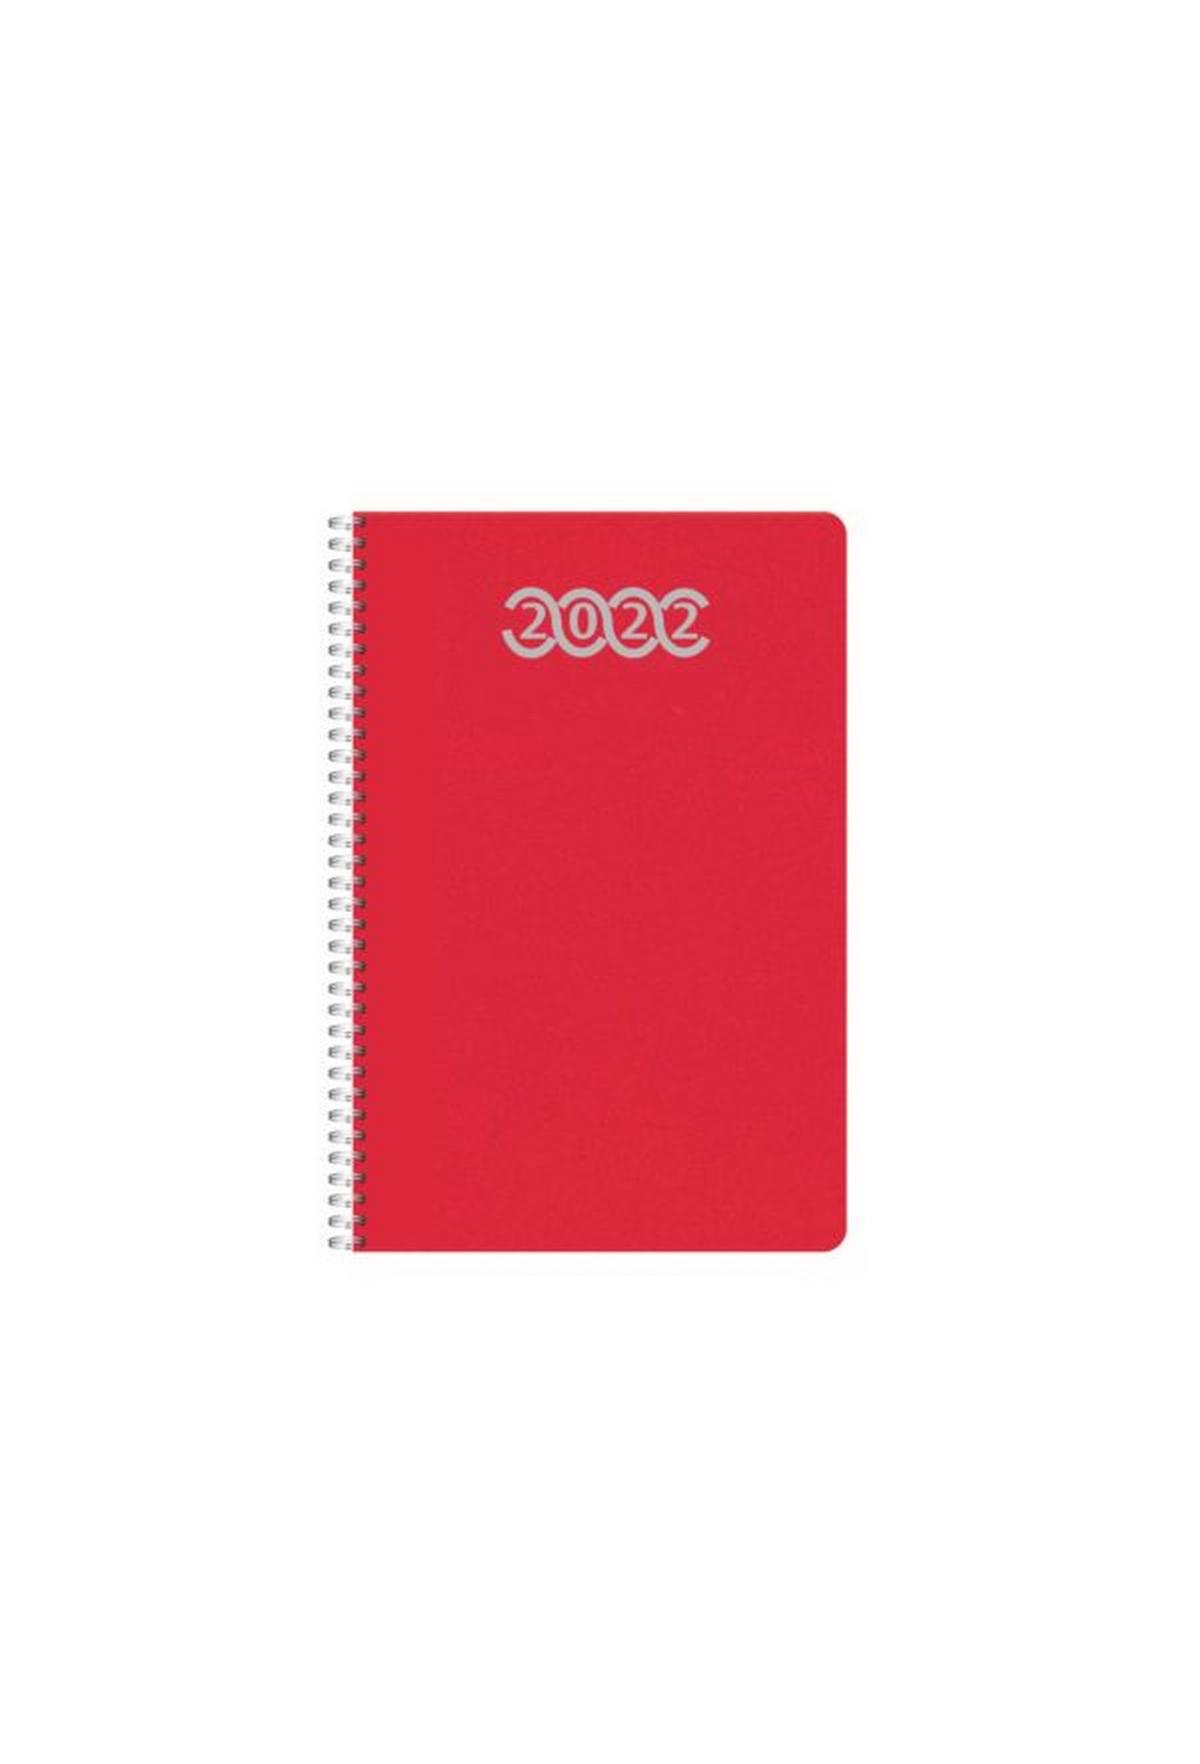 Ημερήσιο ημερολόγιο 2022 pop κόκκινο 12 x 17 cm